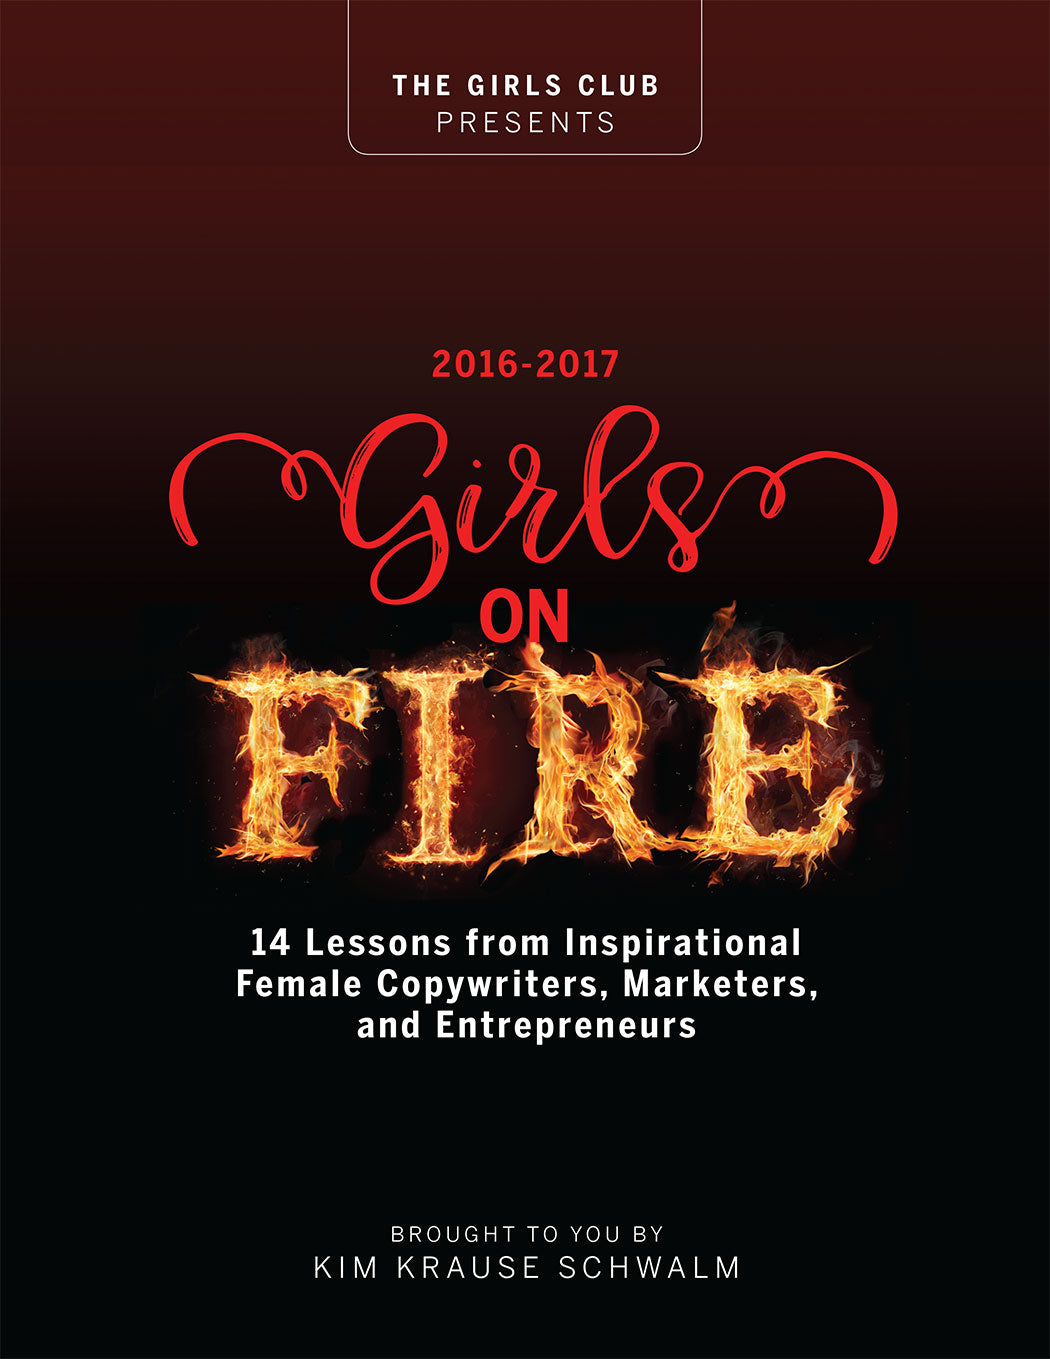 Kim Krause Schwalm's Girls on Fire Book 2016-17